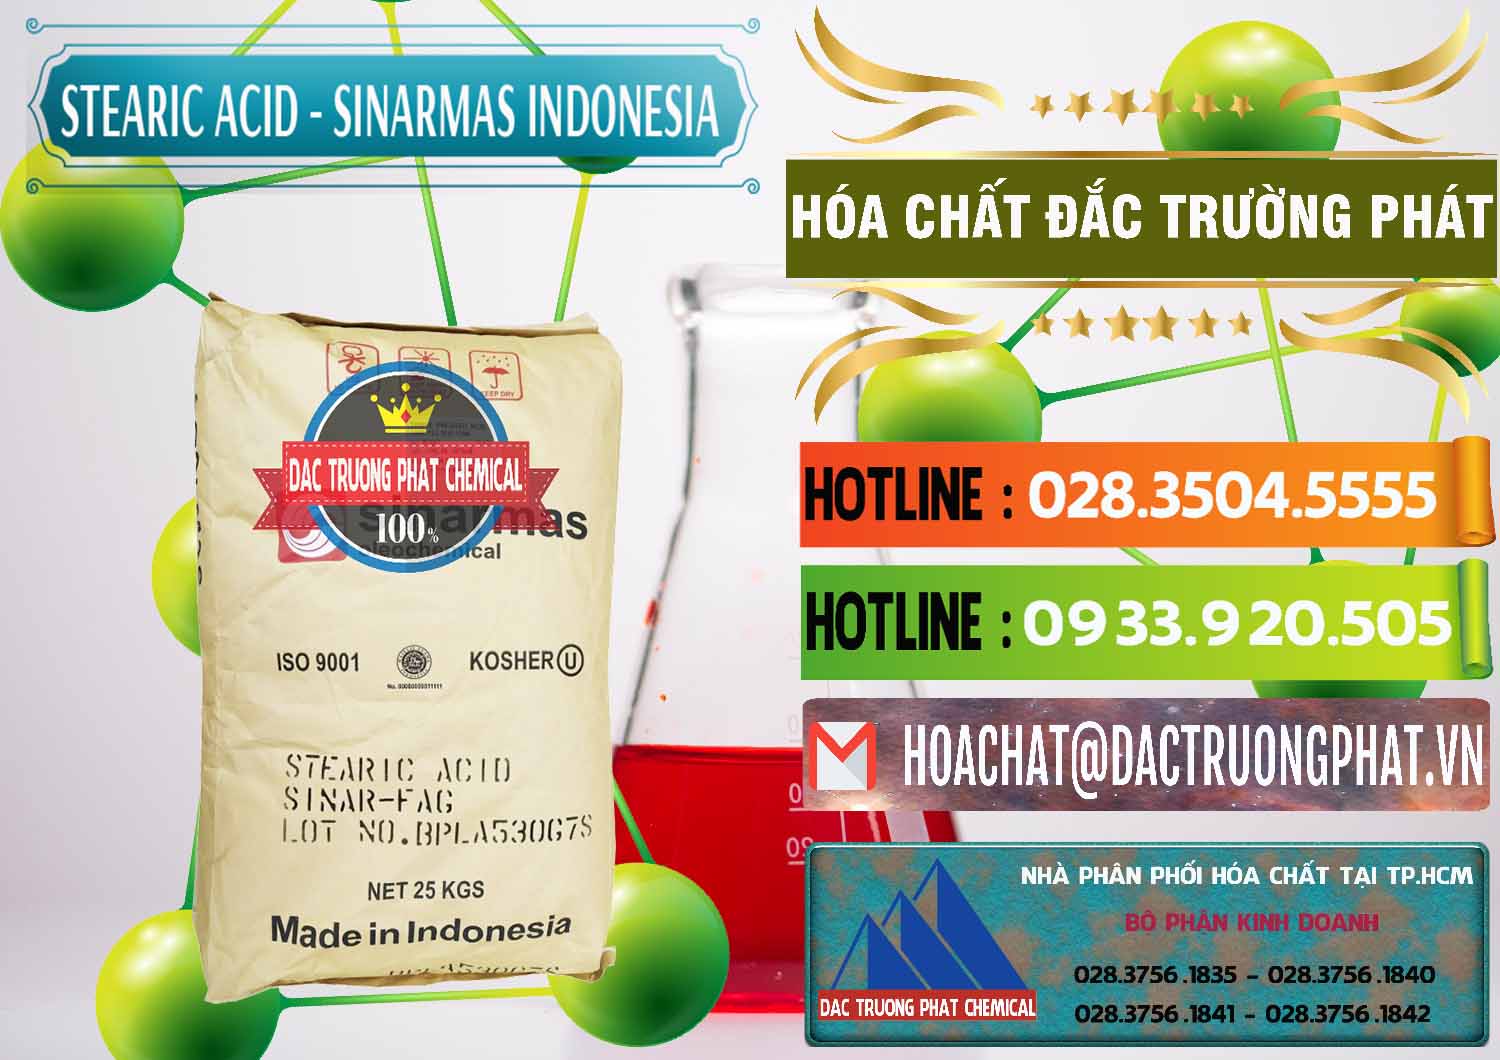 Công ty chuyên bán & cung cấp Axit Stearic - Stearic Acid Sinarmas Indonesia - 0389 - Công ty cung cấp và phân phối hóa chất tại TP.HCM - cungcaphoachat.com.vn